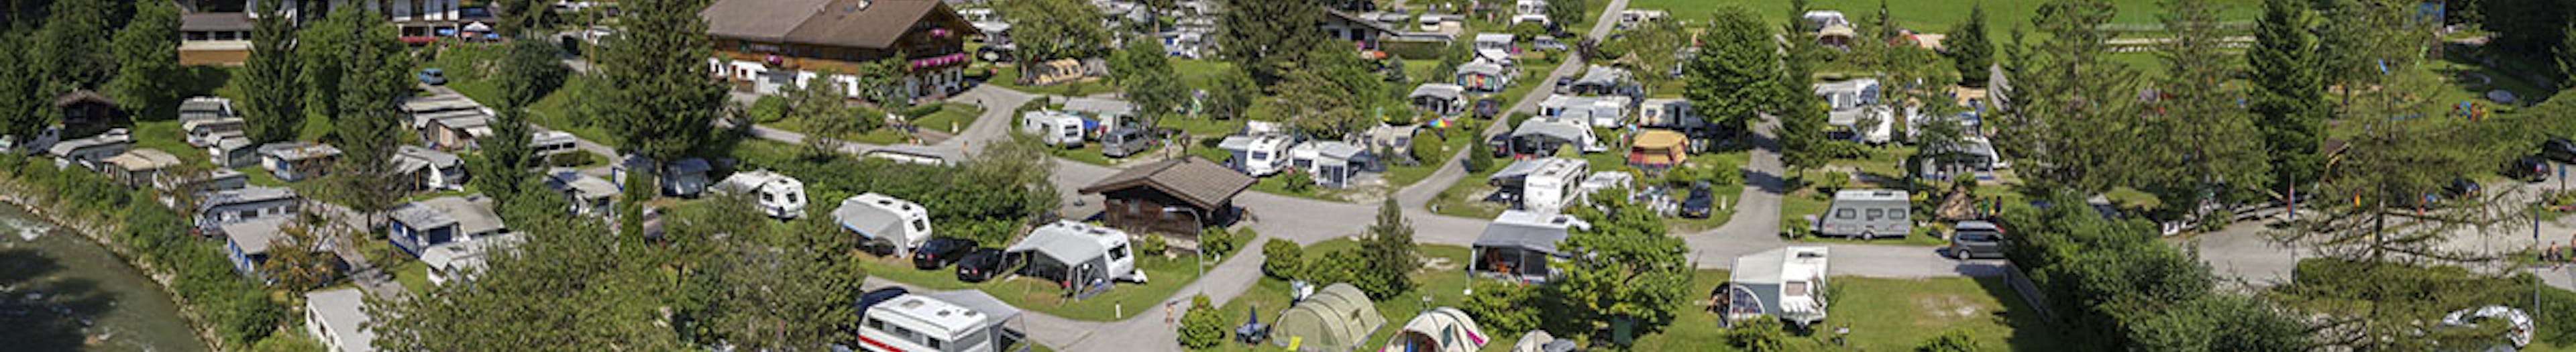 Camping Schlossberg Itter